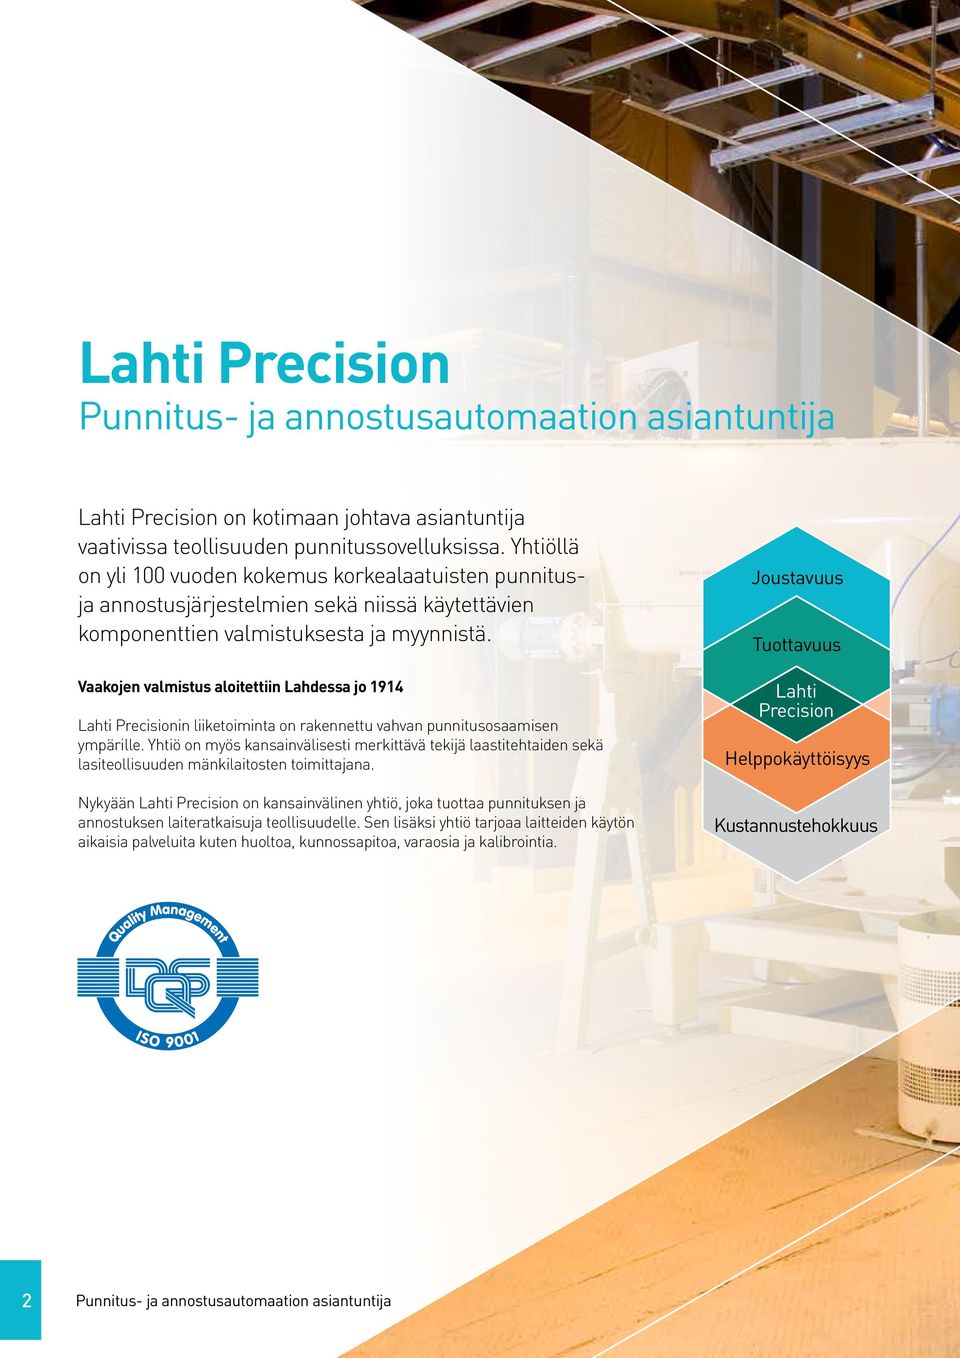 Vaakojen valmistus aloitettiin Lahdessa jo 1914 Lahti Precisionin liiketoiminta on rakennettu vahvan punnitusosaamisen ympärille.